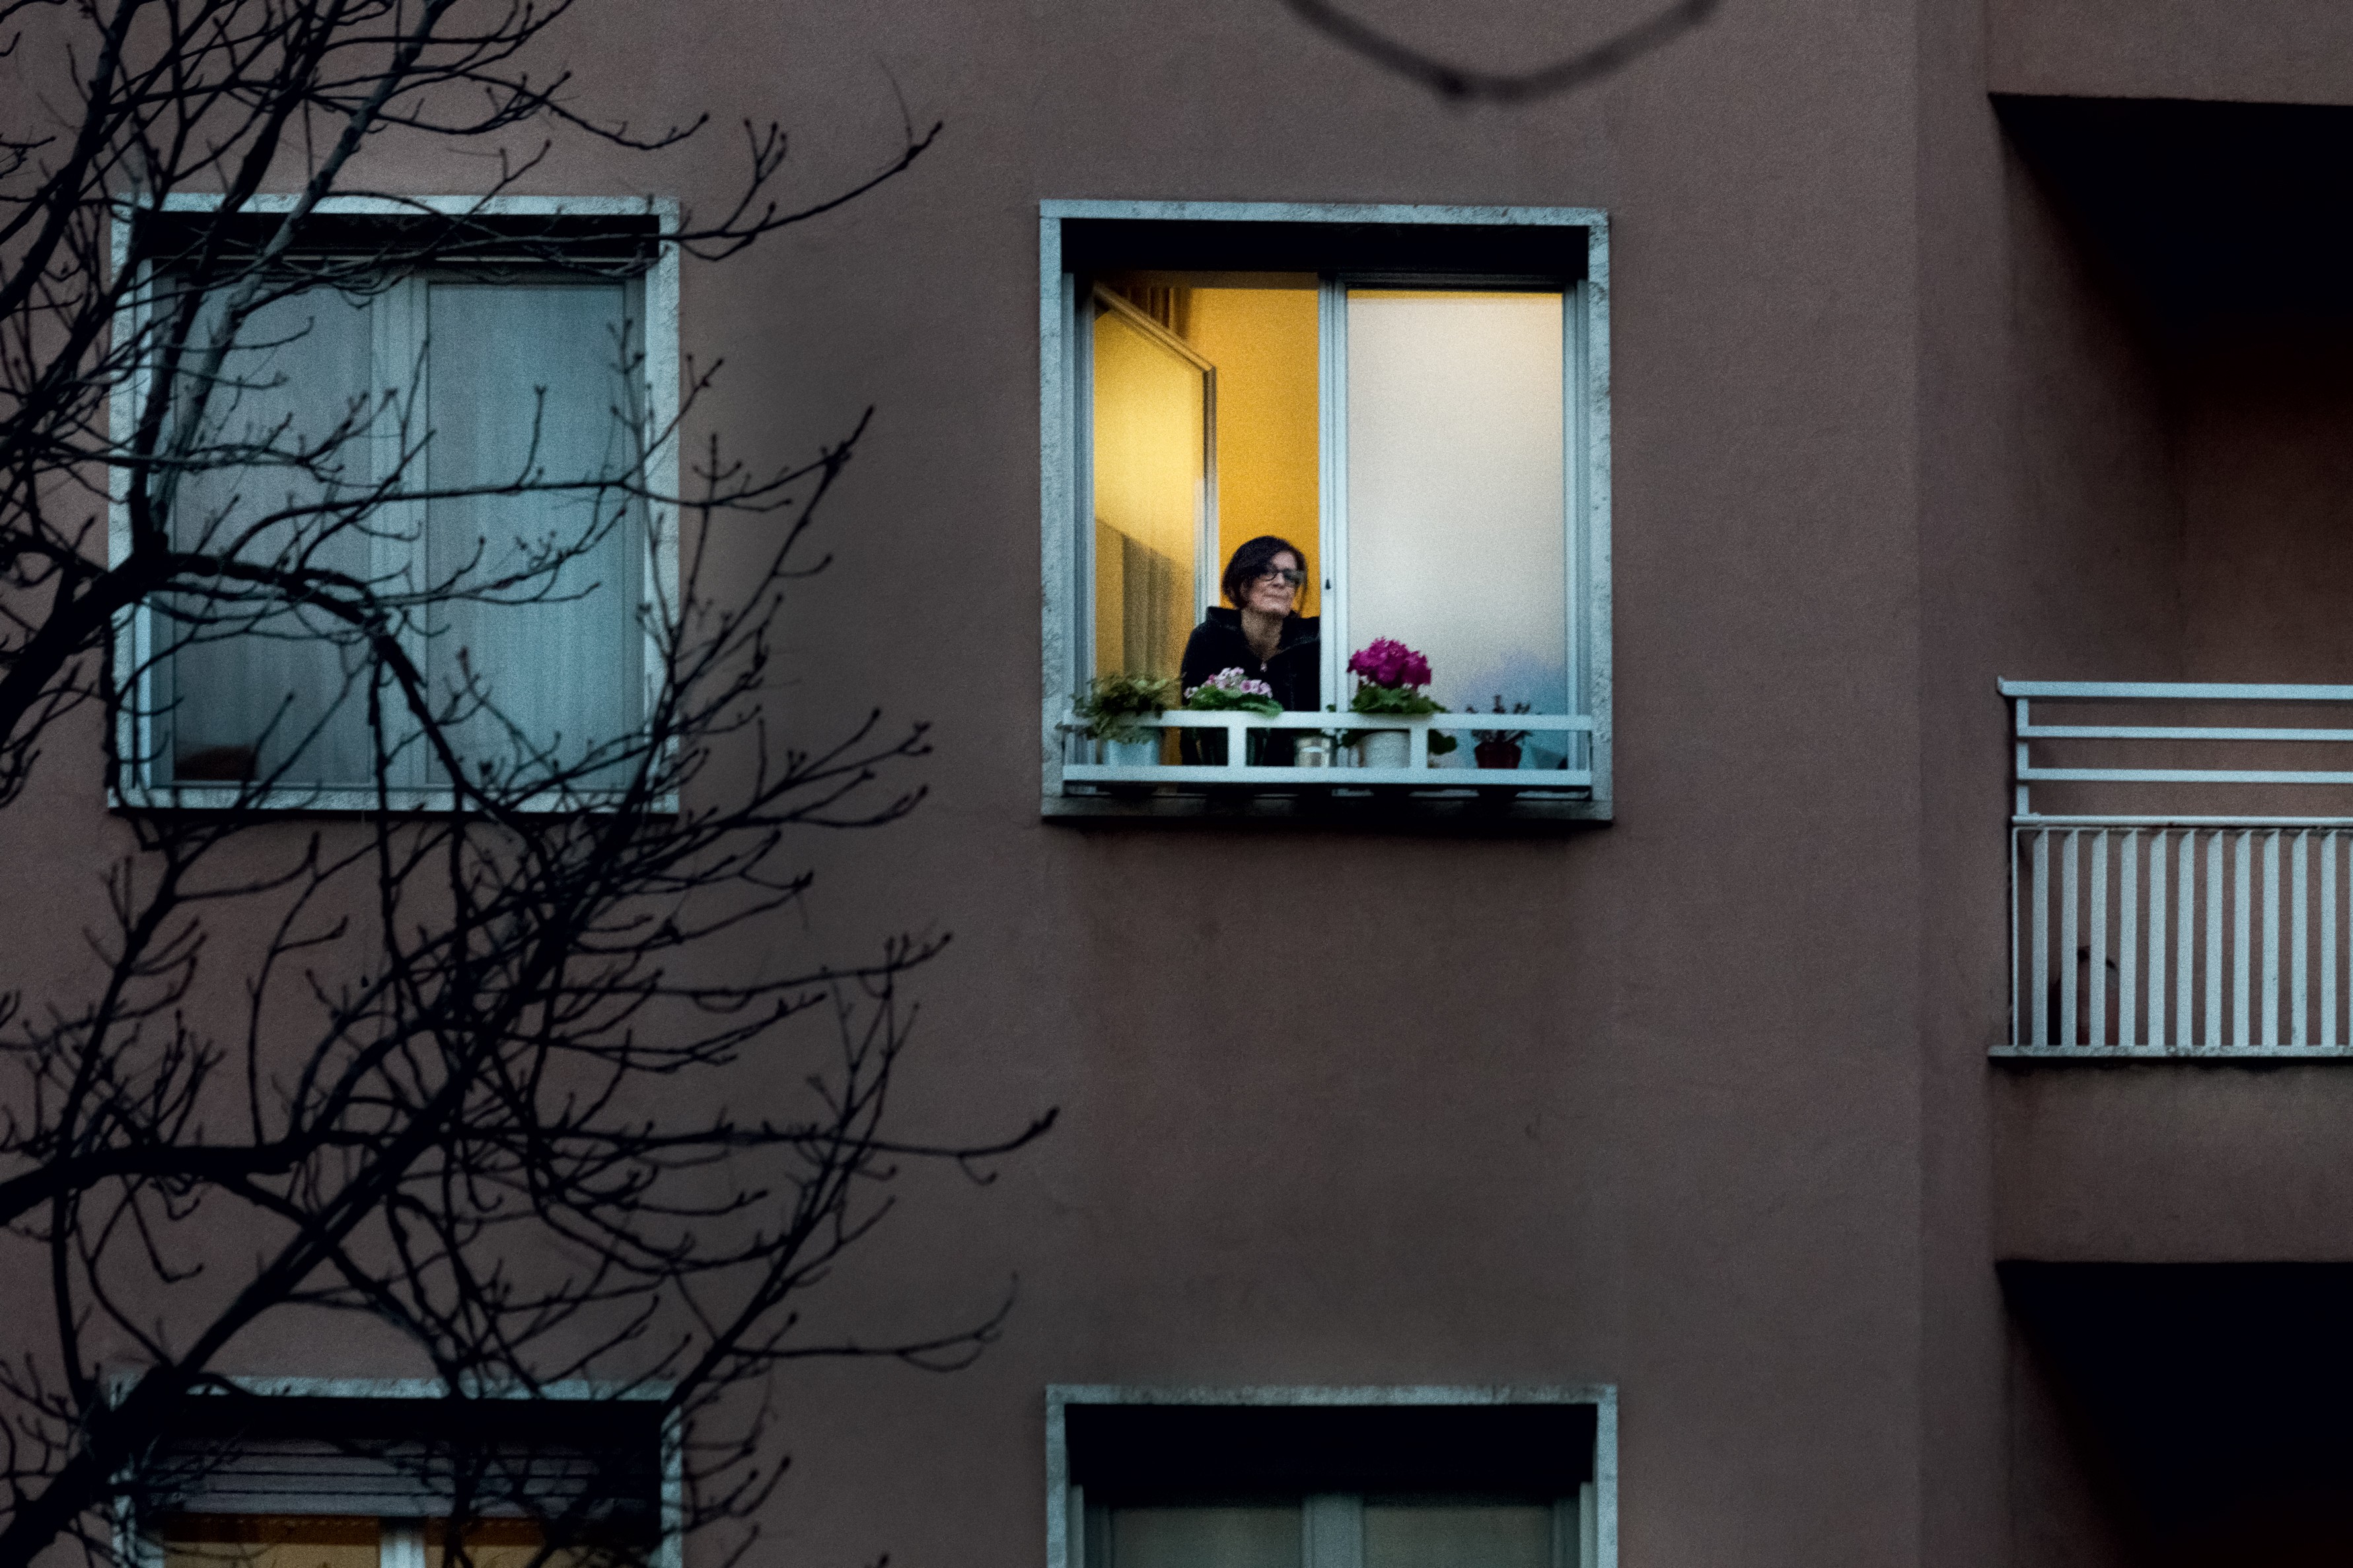 Como o isolamento em casa pode ser transformador? Especialistas indicam caminhos (Foto: Rafael Jacinto)